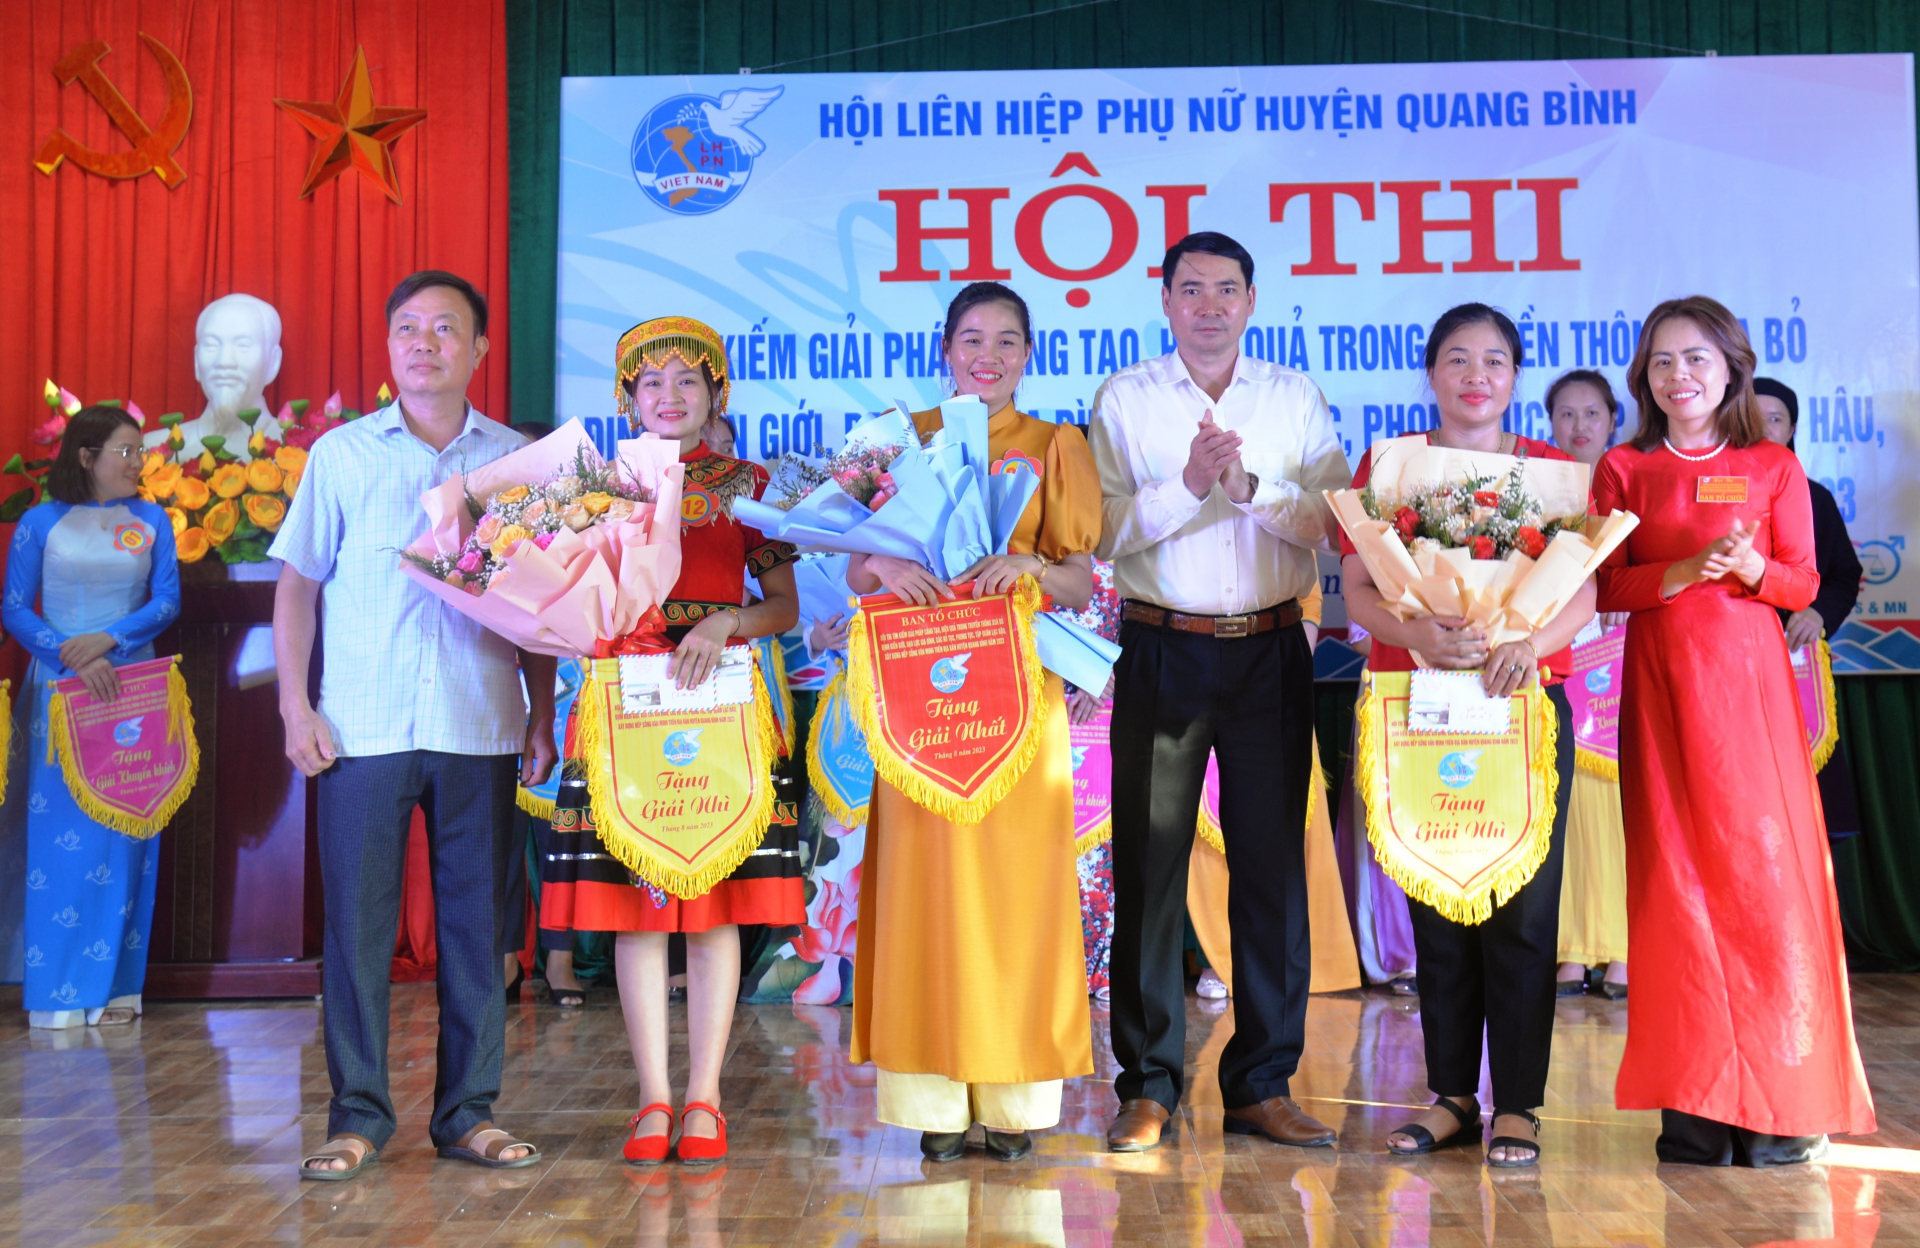 Lãnh đạo Huyện ủy, Chủ tịch Hội Liên hiệp phụ nữ huyện Quang Bình và lãnh đạo thị trấn Yên Bình trao giải Nhất, Nhì cho các đội đạt thành tích cao trong hội thi